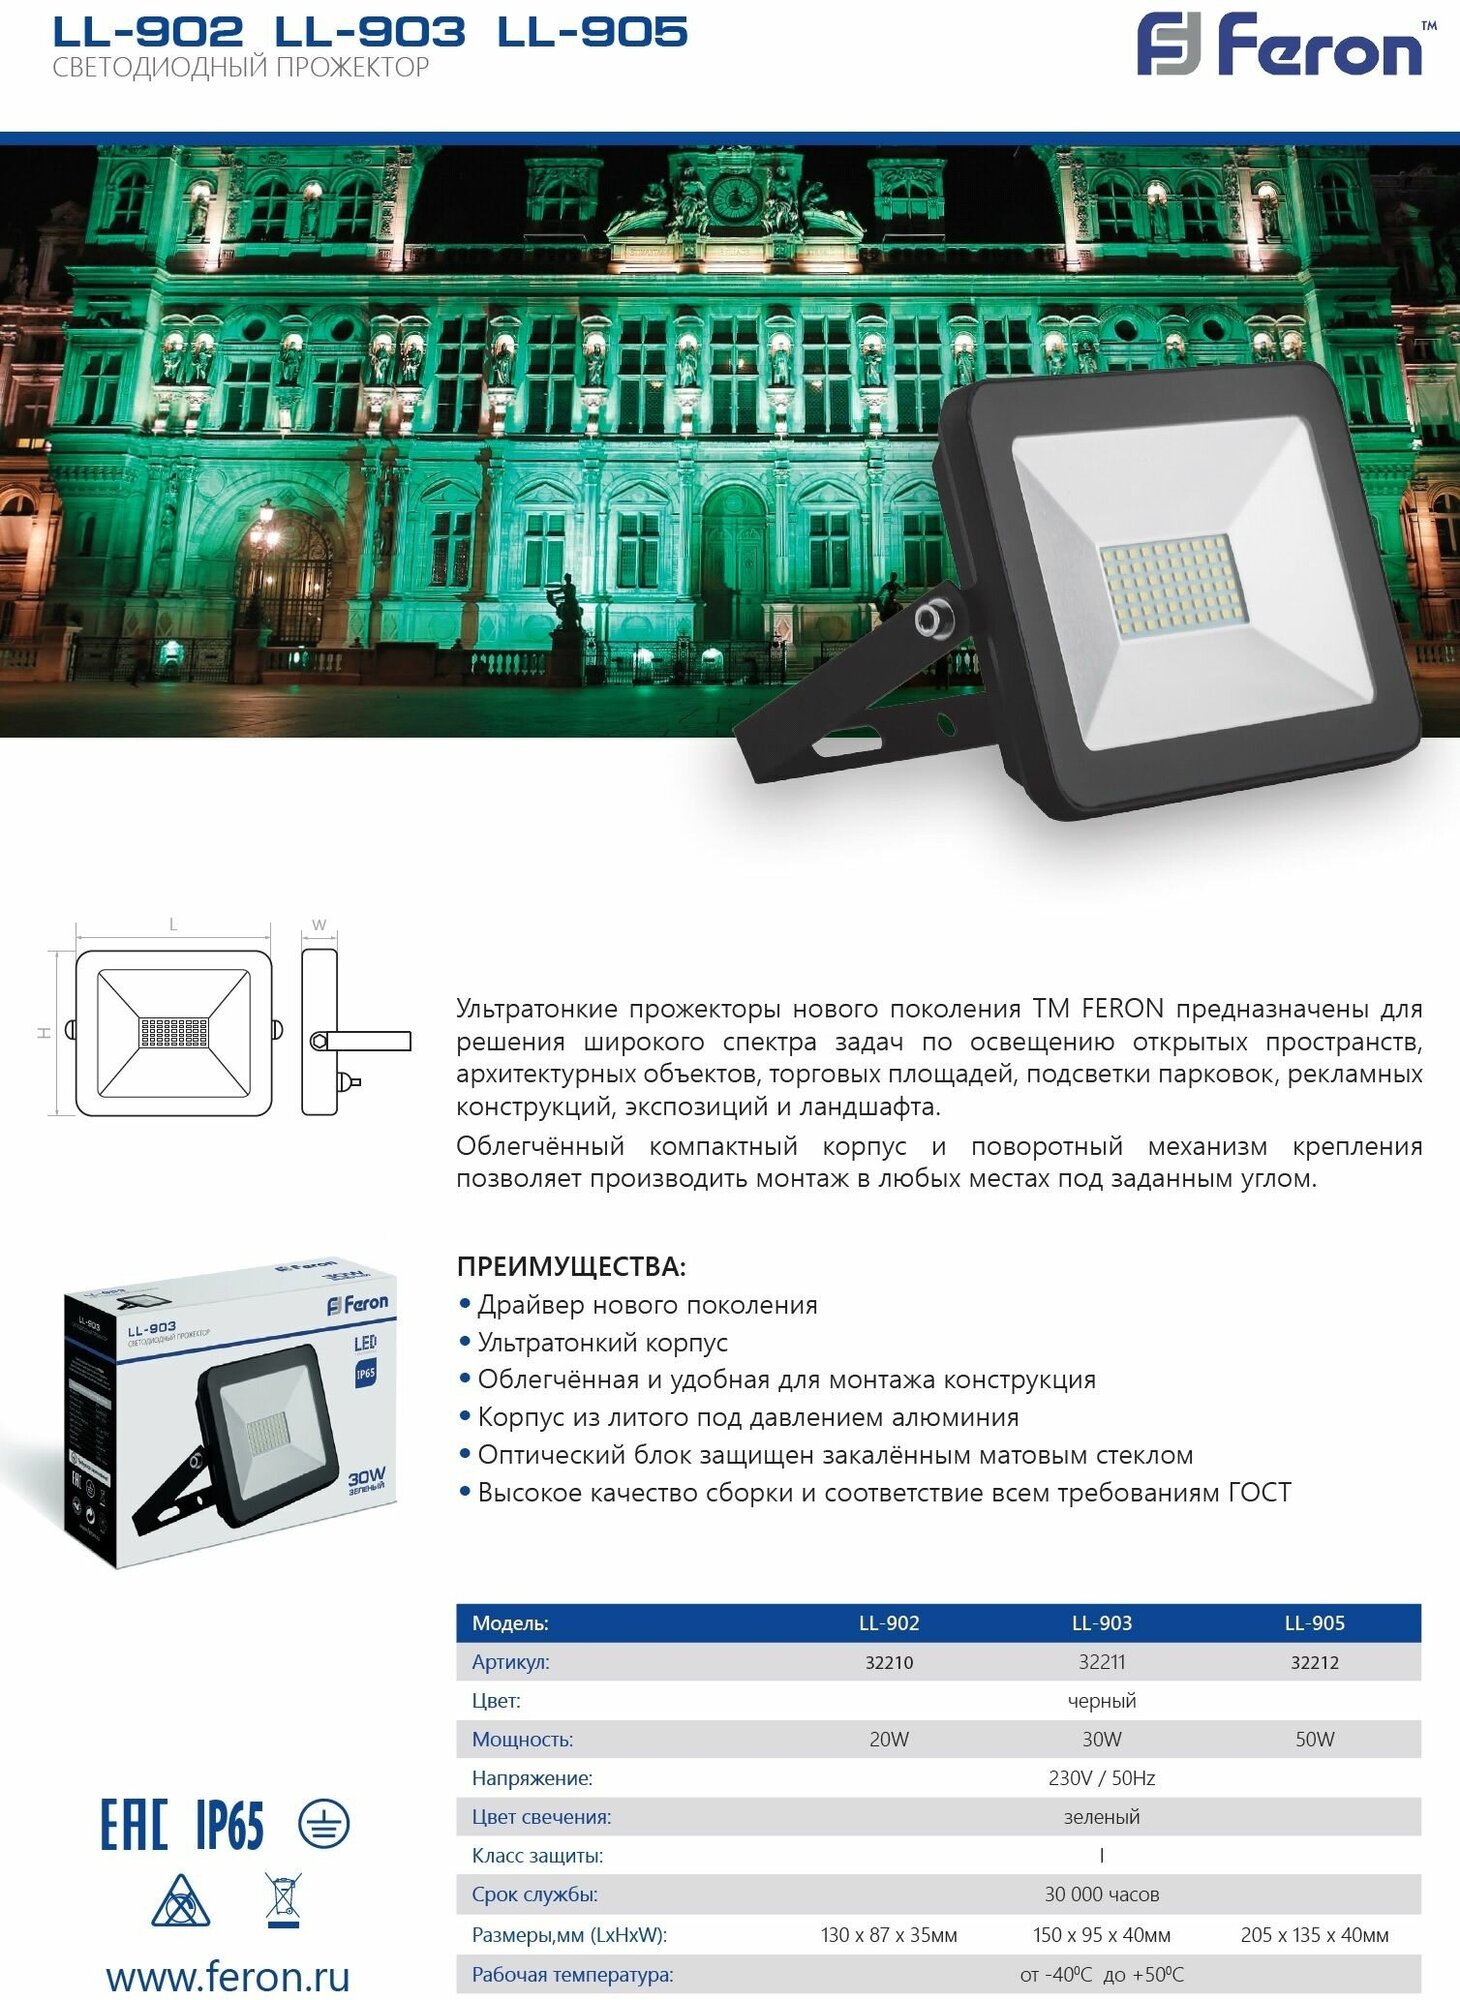 Светодиодный прожектор FERON LL-903 2835 SMD 30W зеленый AC220V/50Hz IP65, черный в компактном корпусе, 153*110*35 мм 32211